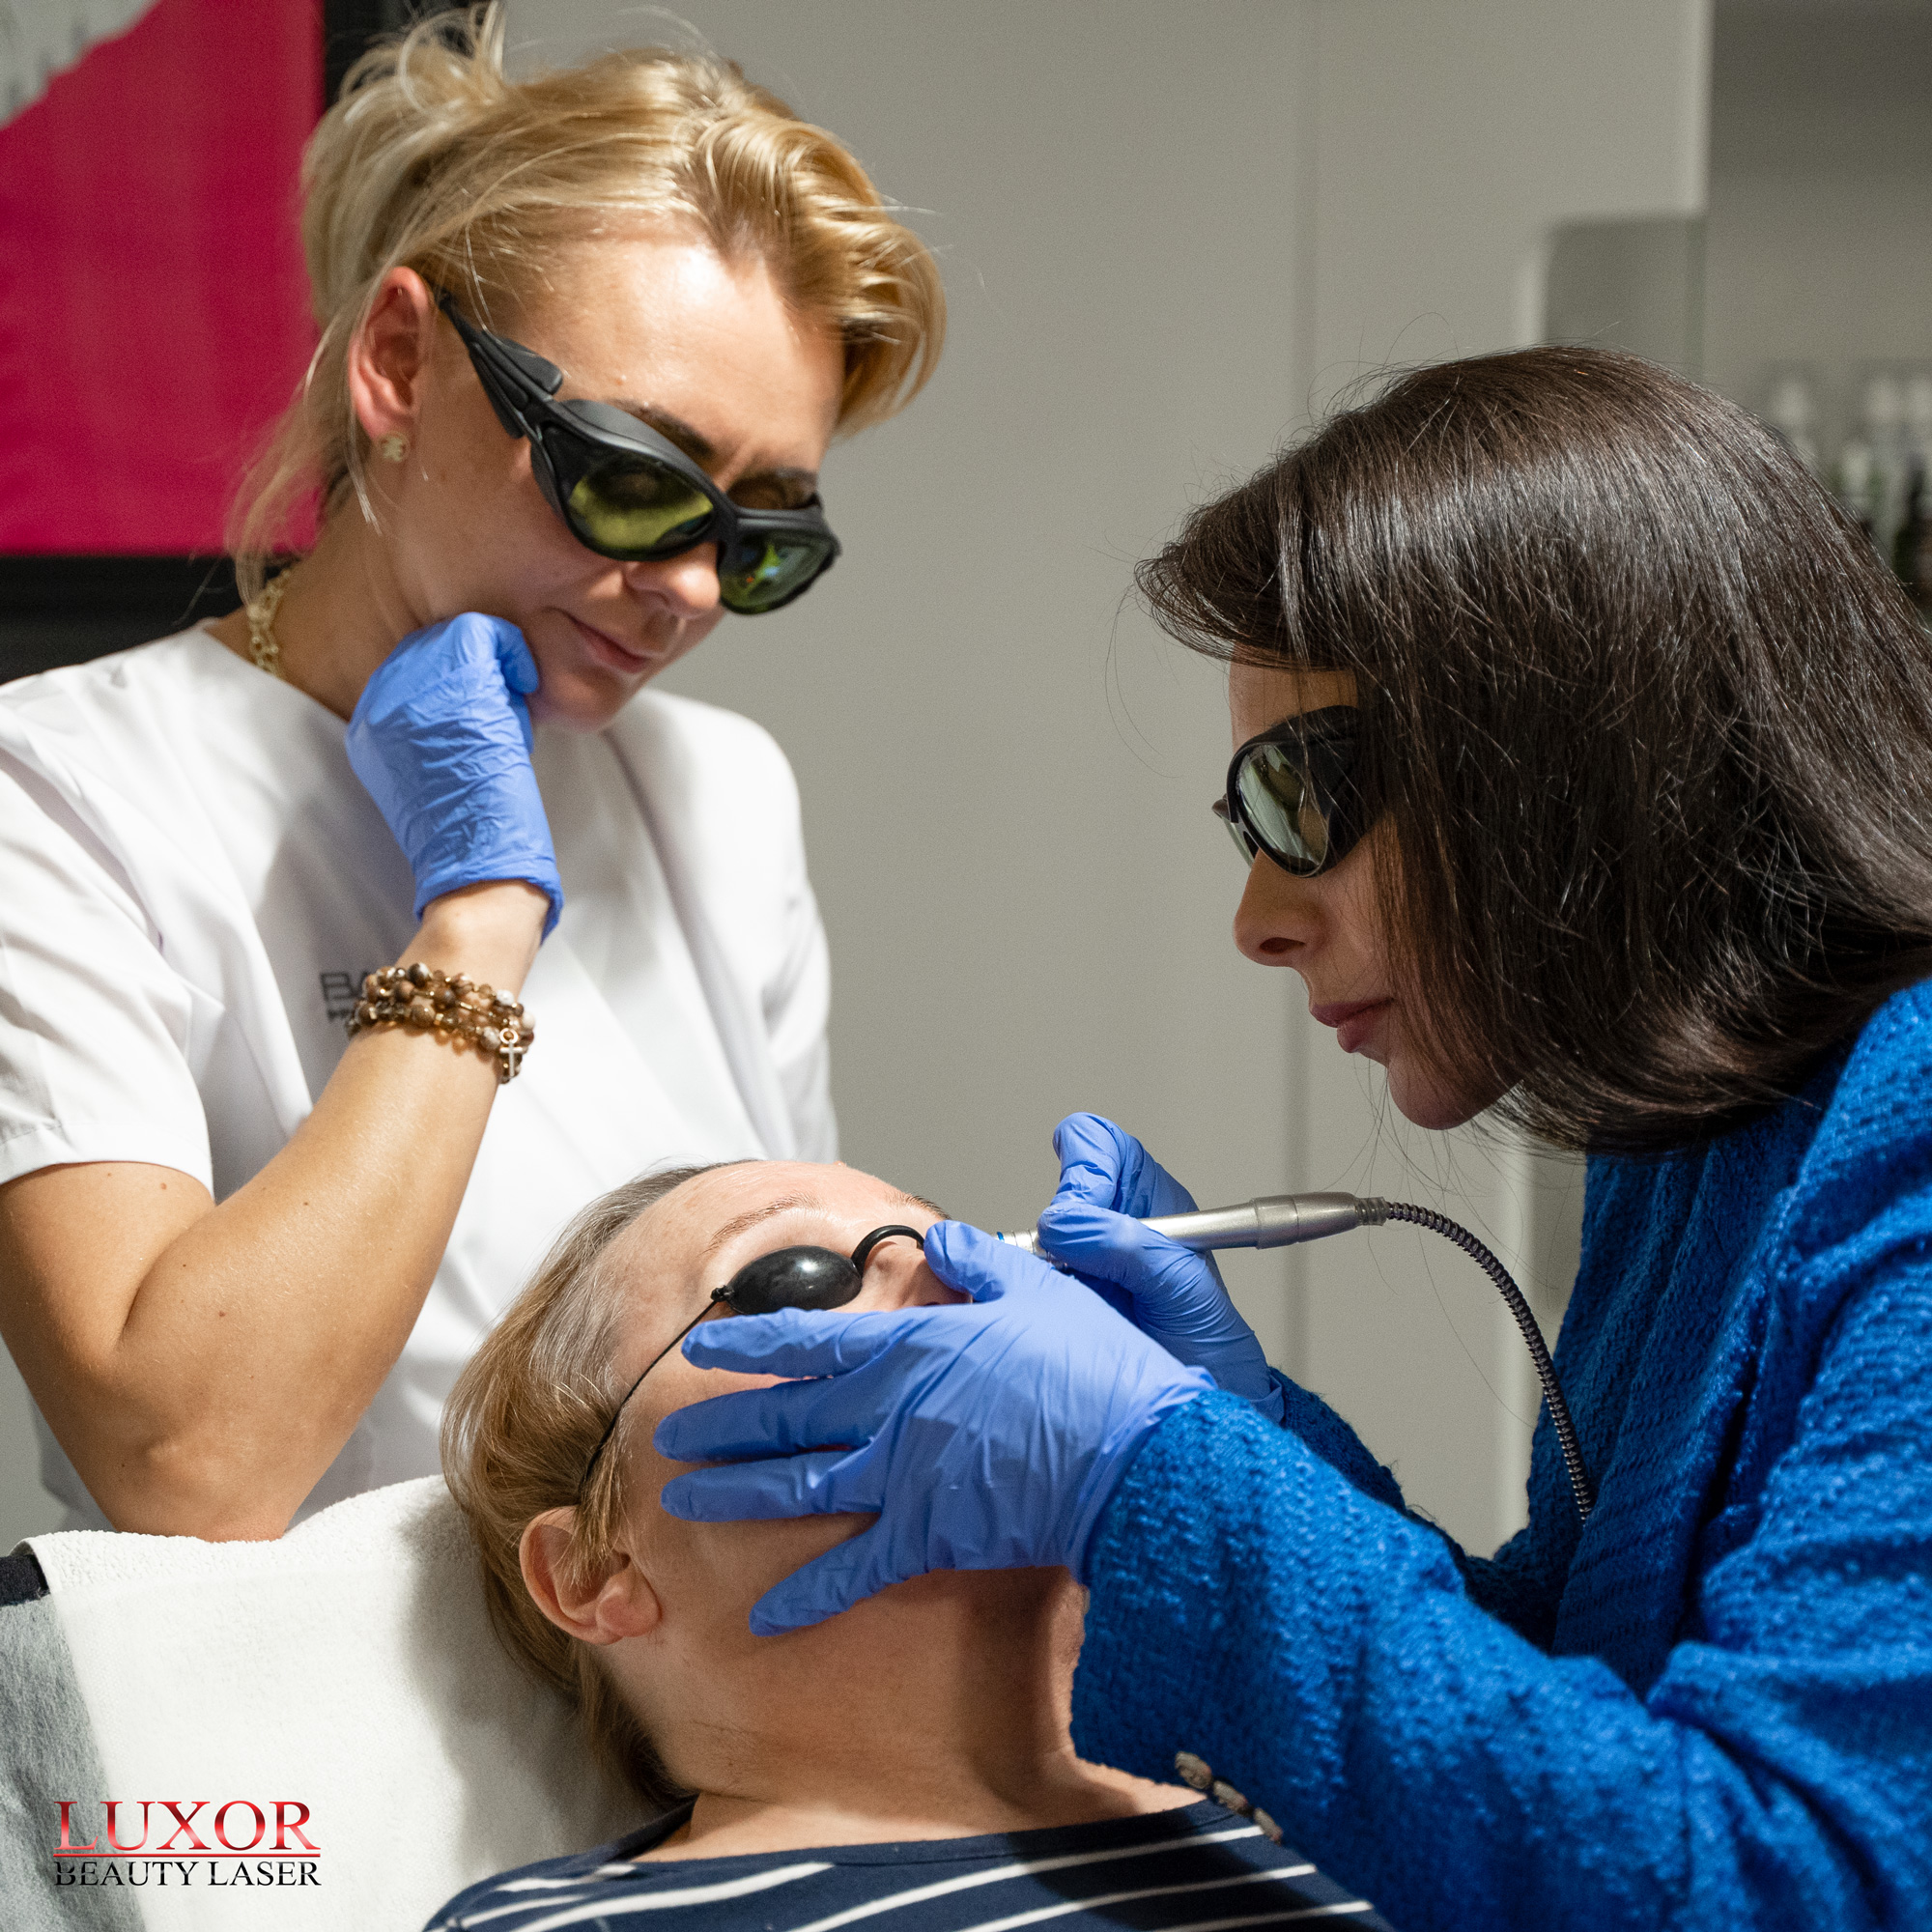 Luxor Beauty Laser to maszyna, która spełnia największe oczekiwania kosmetologów i pacjentów